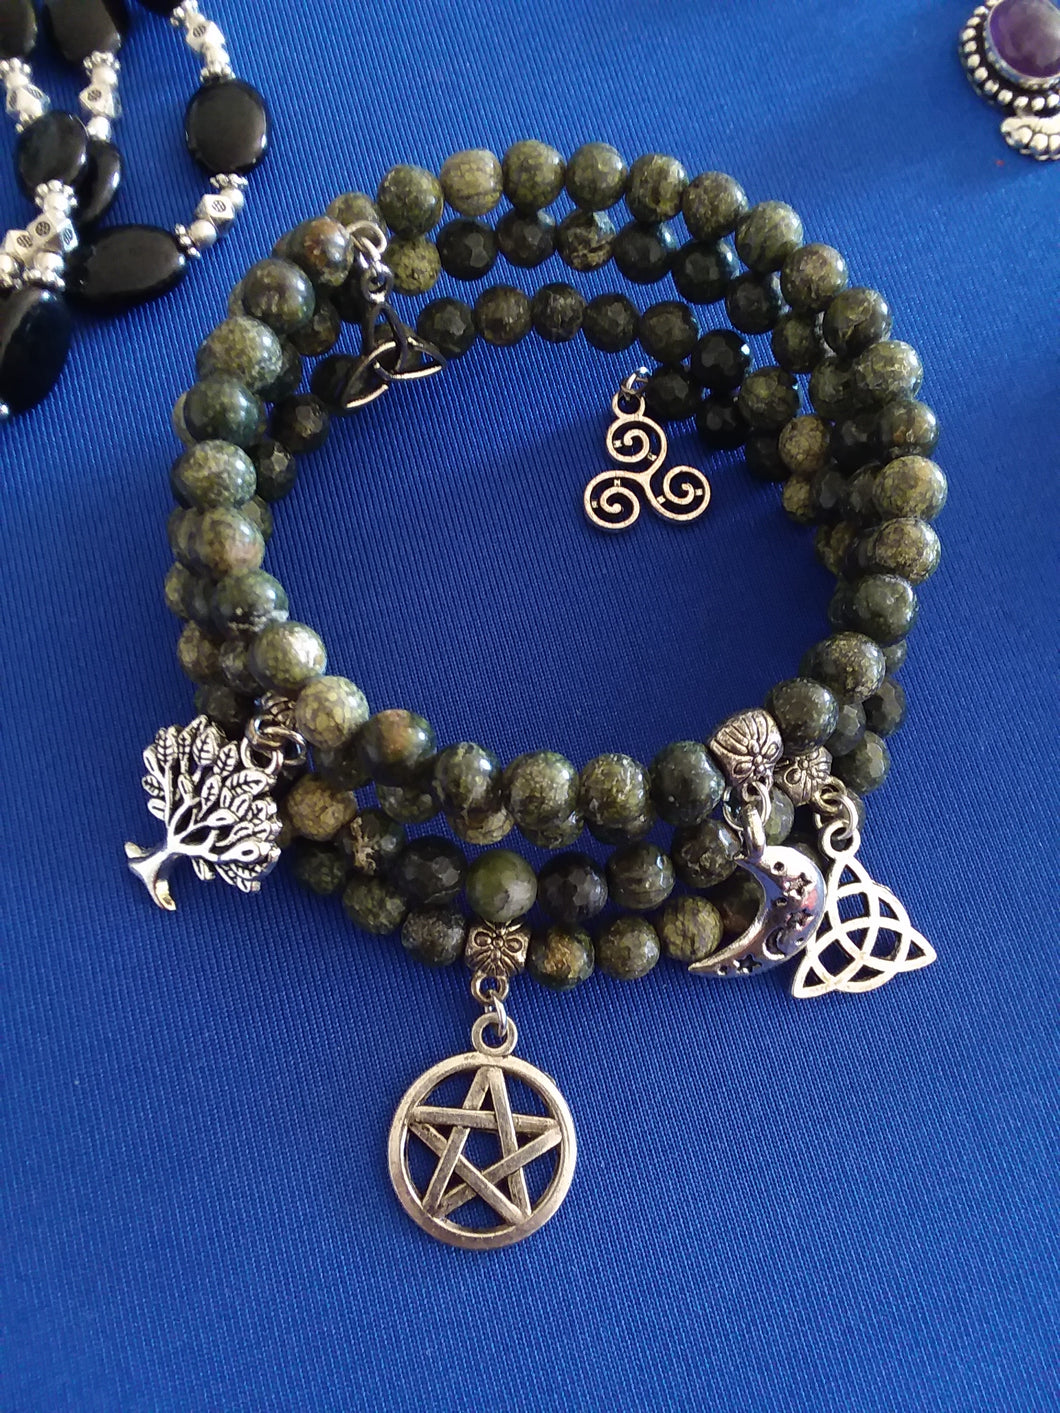 AVBeads Gemstone Beaded Charm Bracelet Wicca Pagan Jewelry 4Layer Wrap Jasper